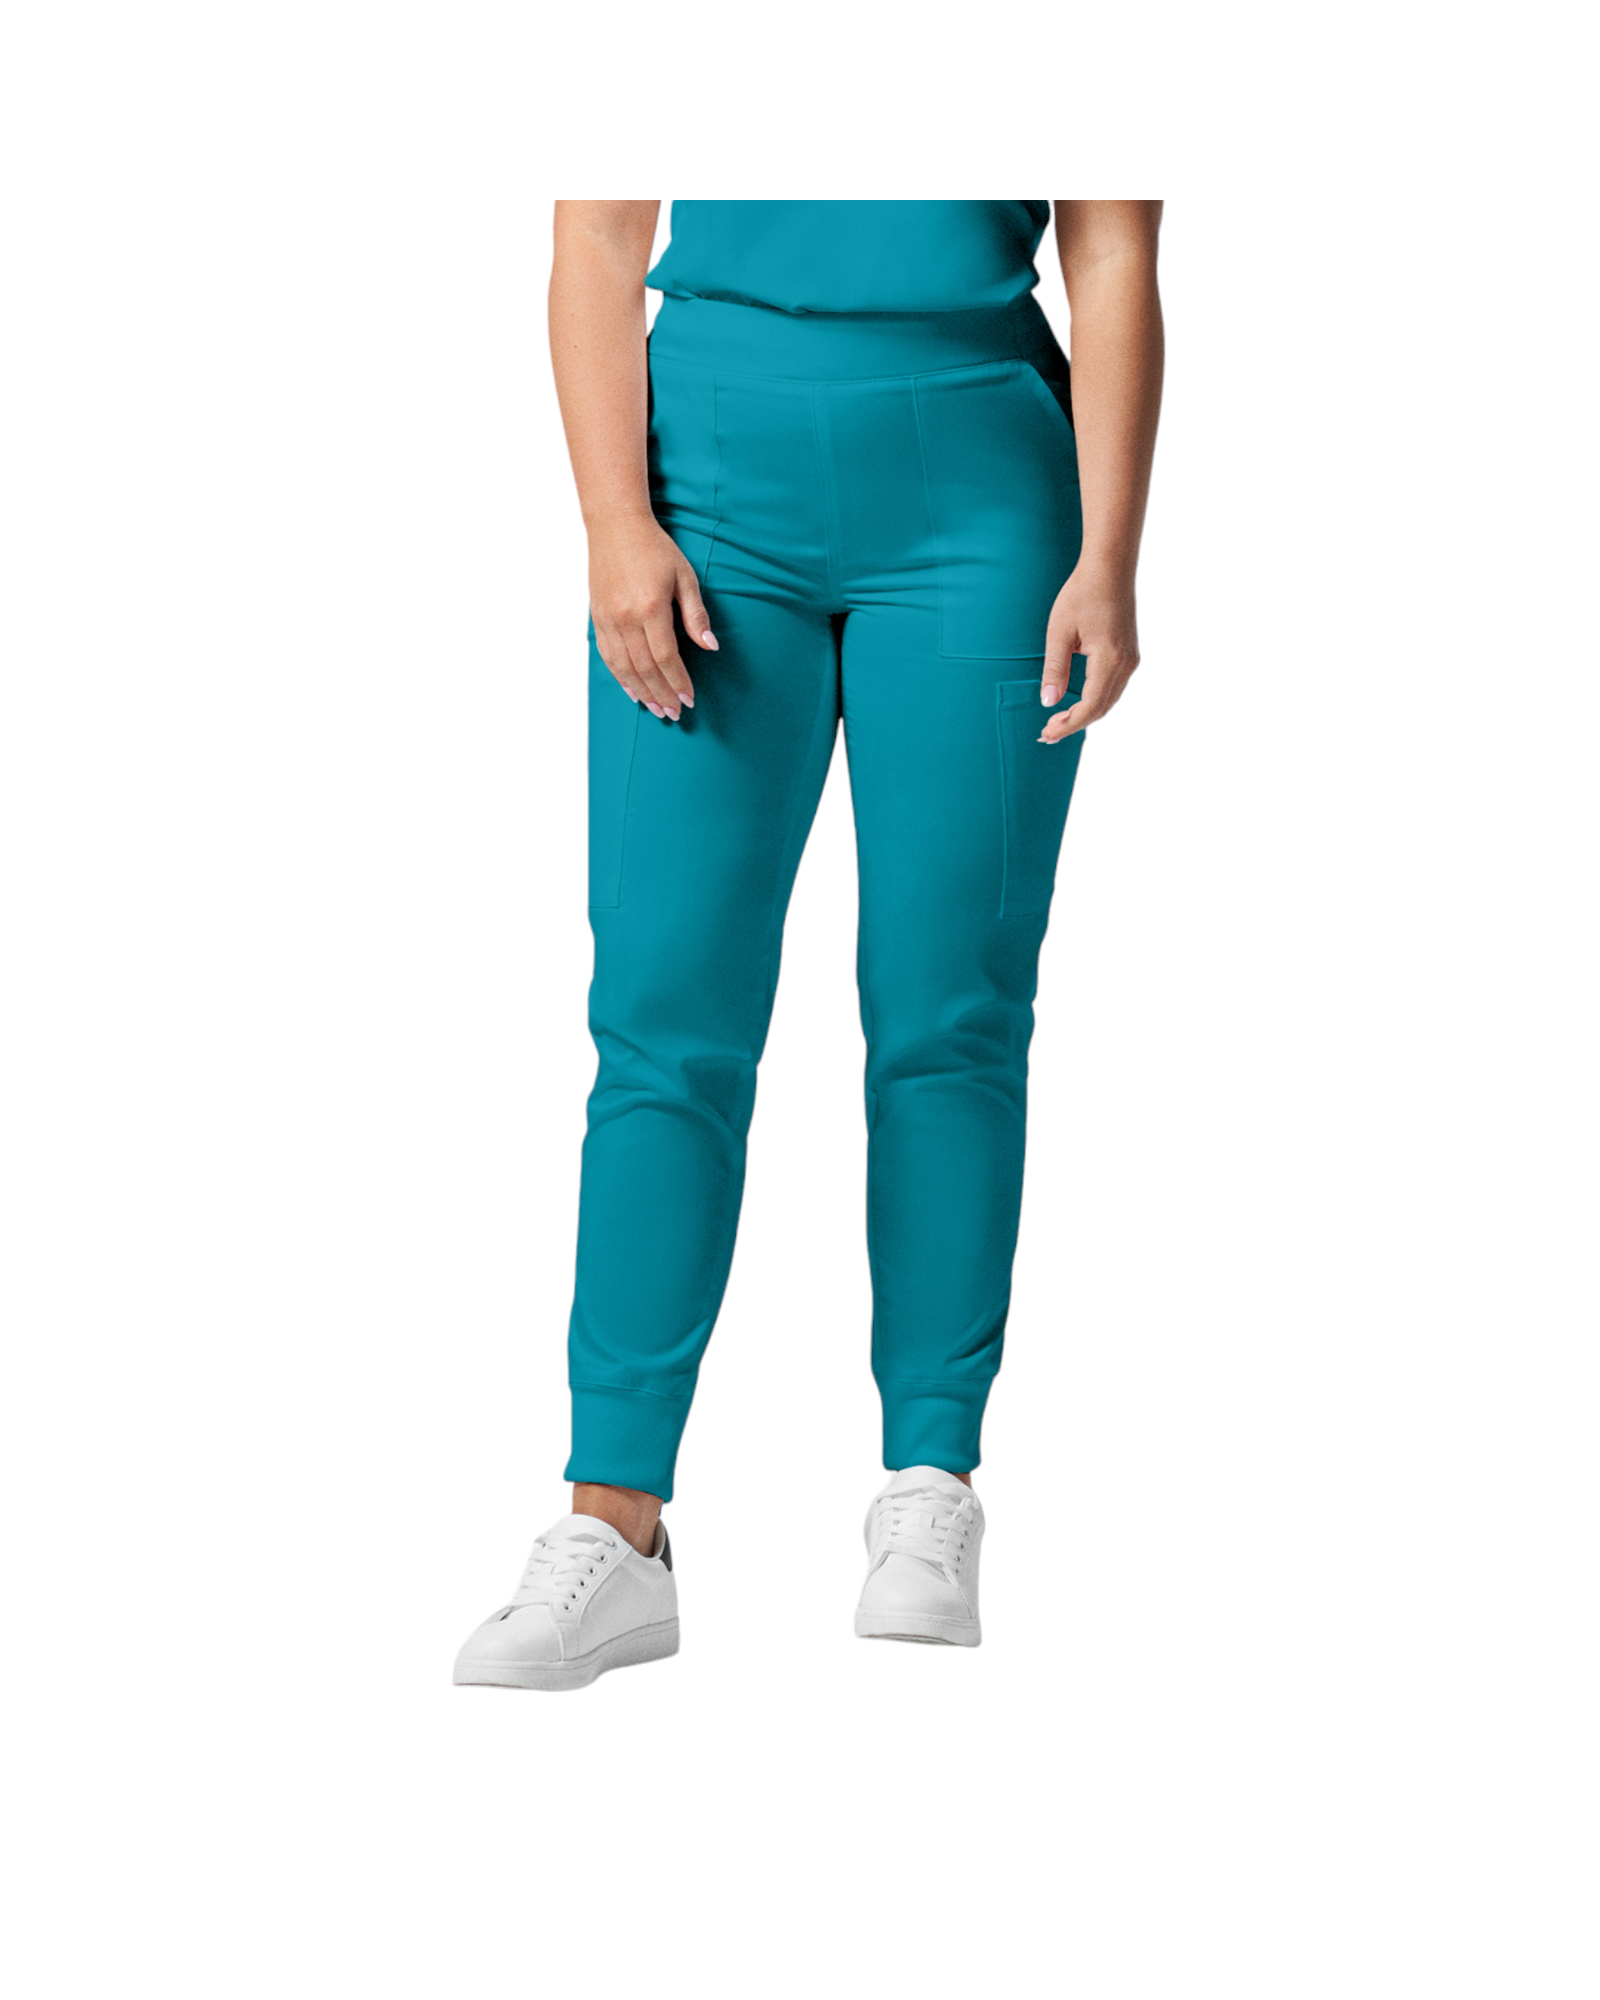 Pantalon de style jogger 6 poches pour femmes Landau Proflex #LB406-OS couleur Sarcelle